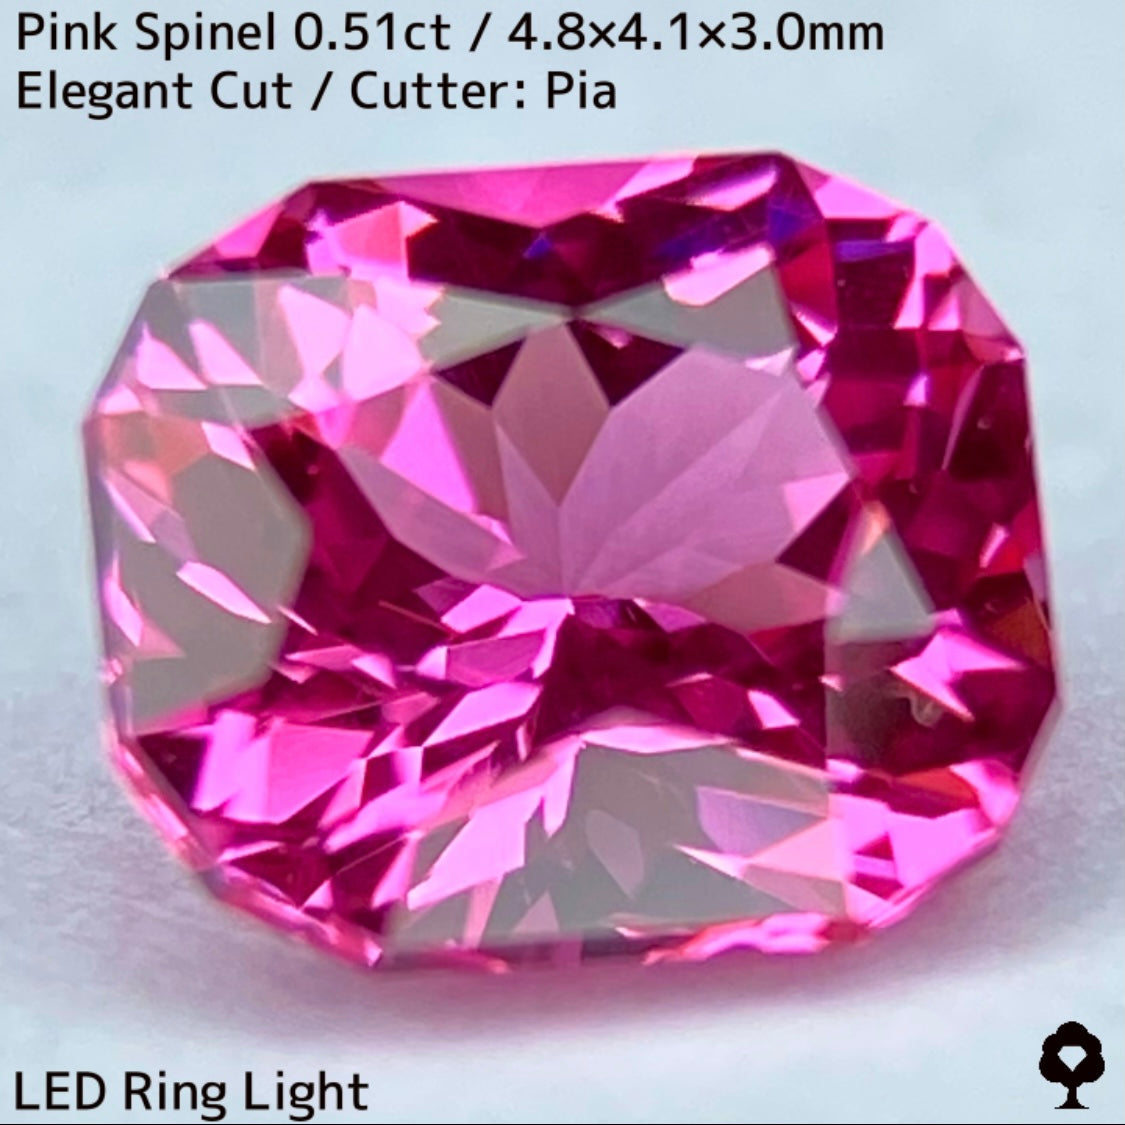 ホットピンクの強く細かい煌めきにファイアーチラつく超美結晶★ピンクスピネル0.51ct